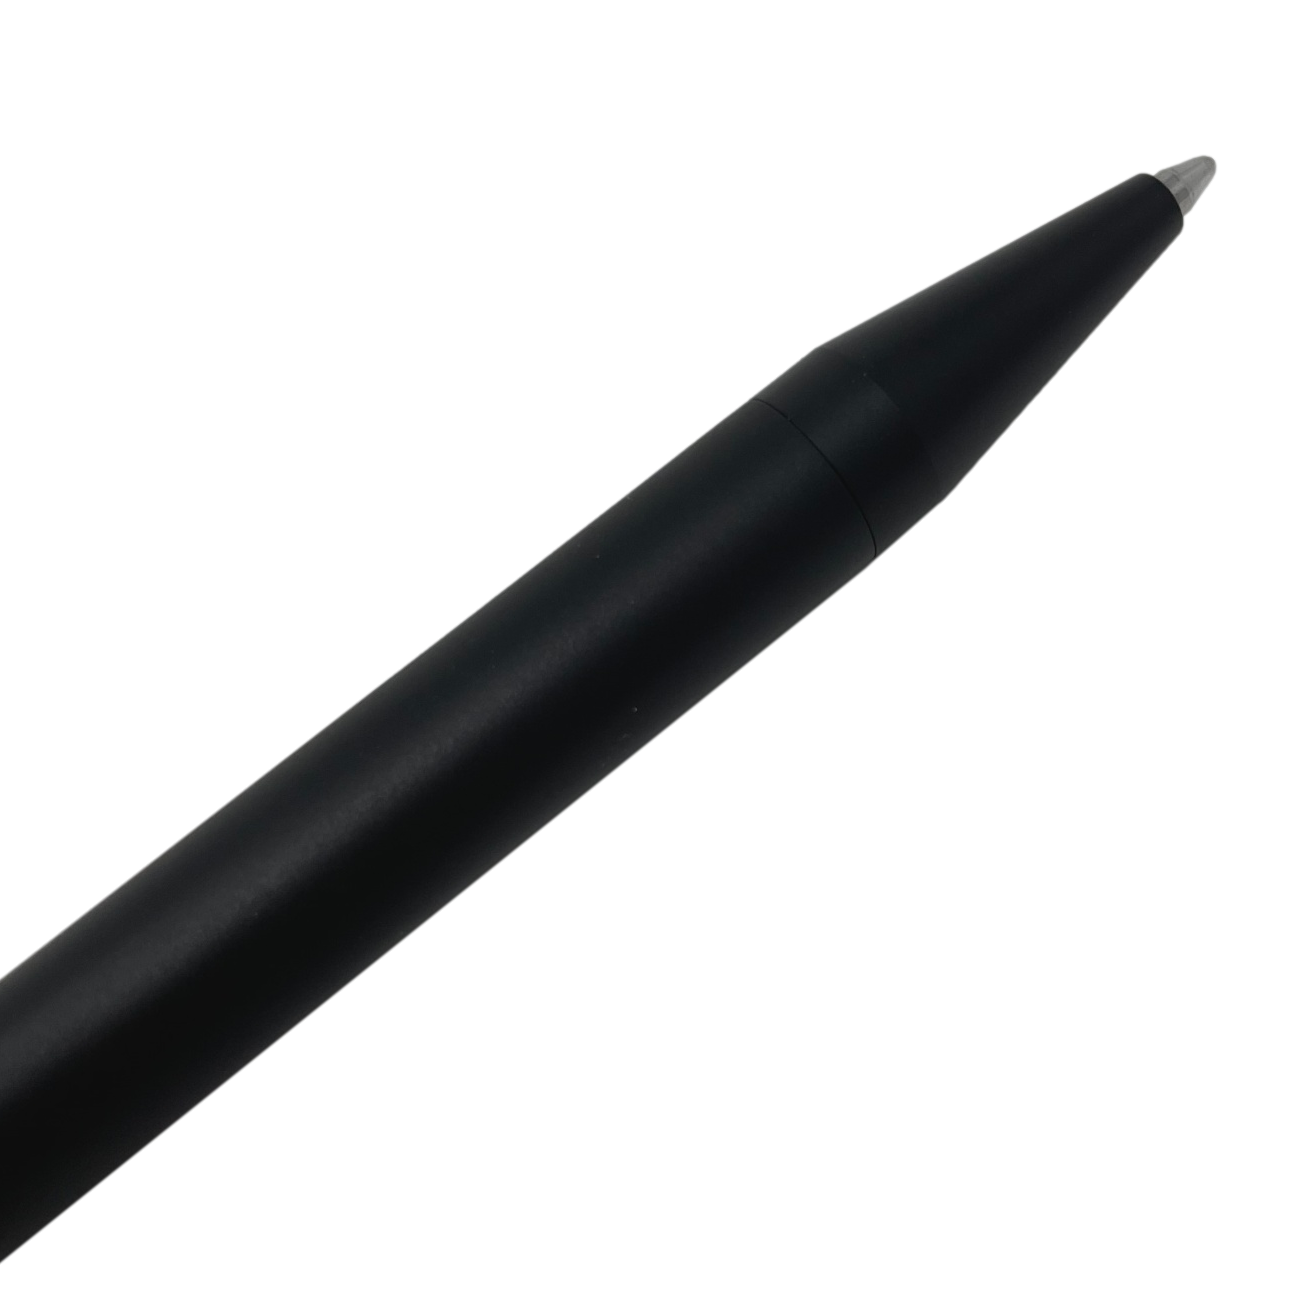 Valtcan Eclipse Titanium Pen EDC Writer Slim Design Matte Black